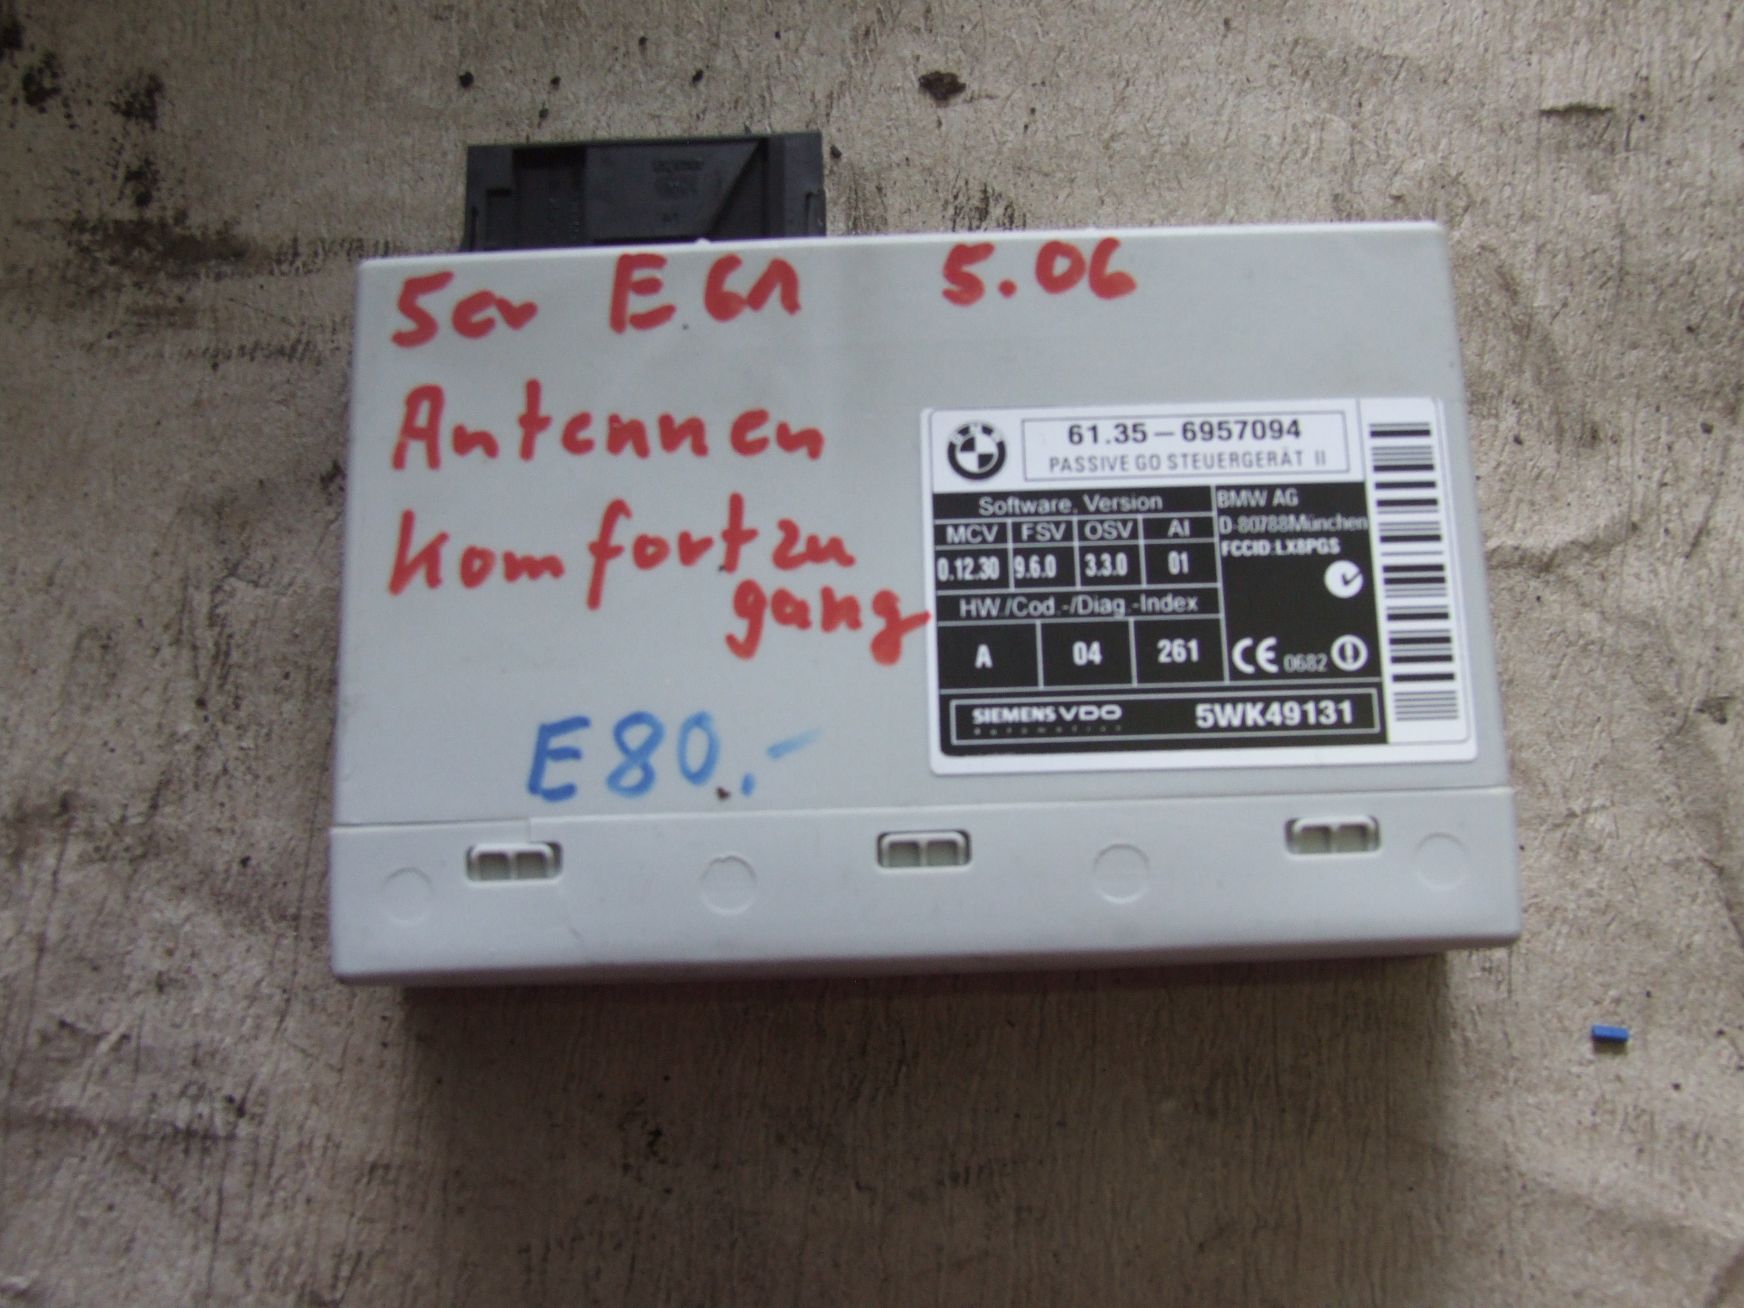 Steuergerät Antenne aus BMW E61 530 xd / 61356957094 (gebraucht)